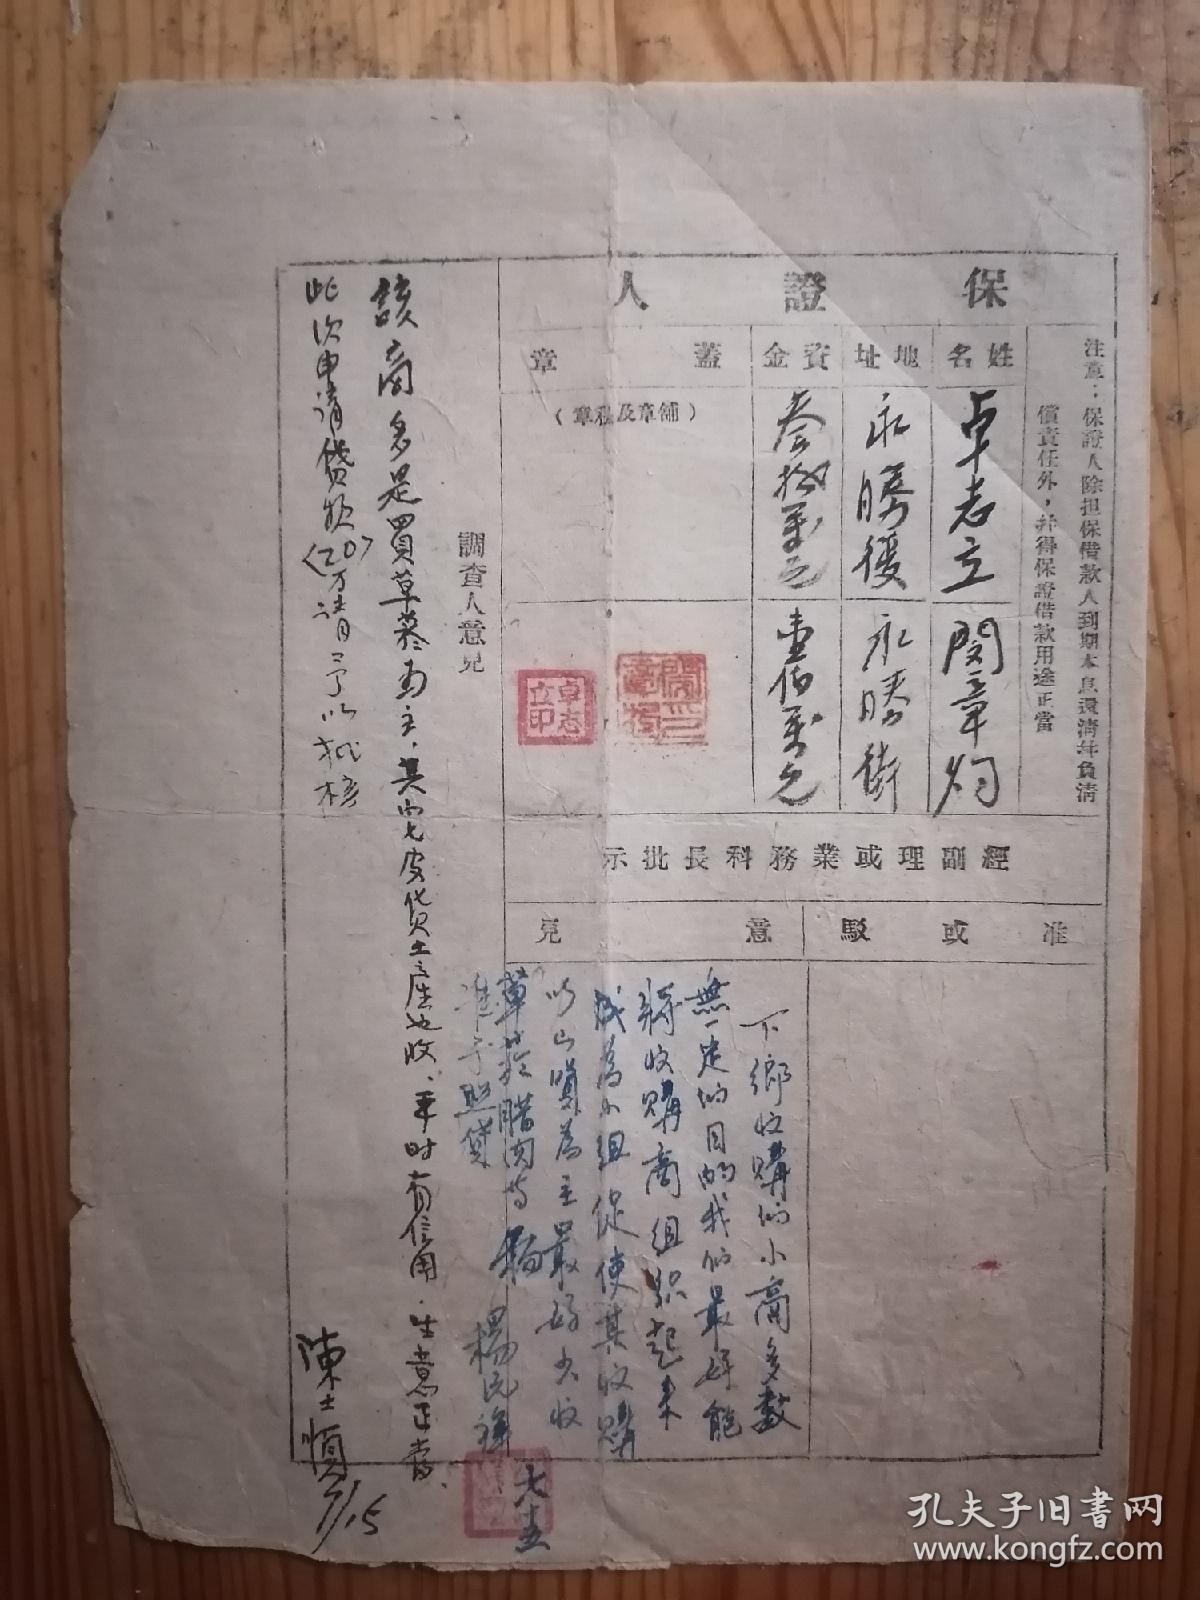 1951年中国人民银行恩施支行定期放款申请书